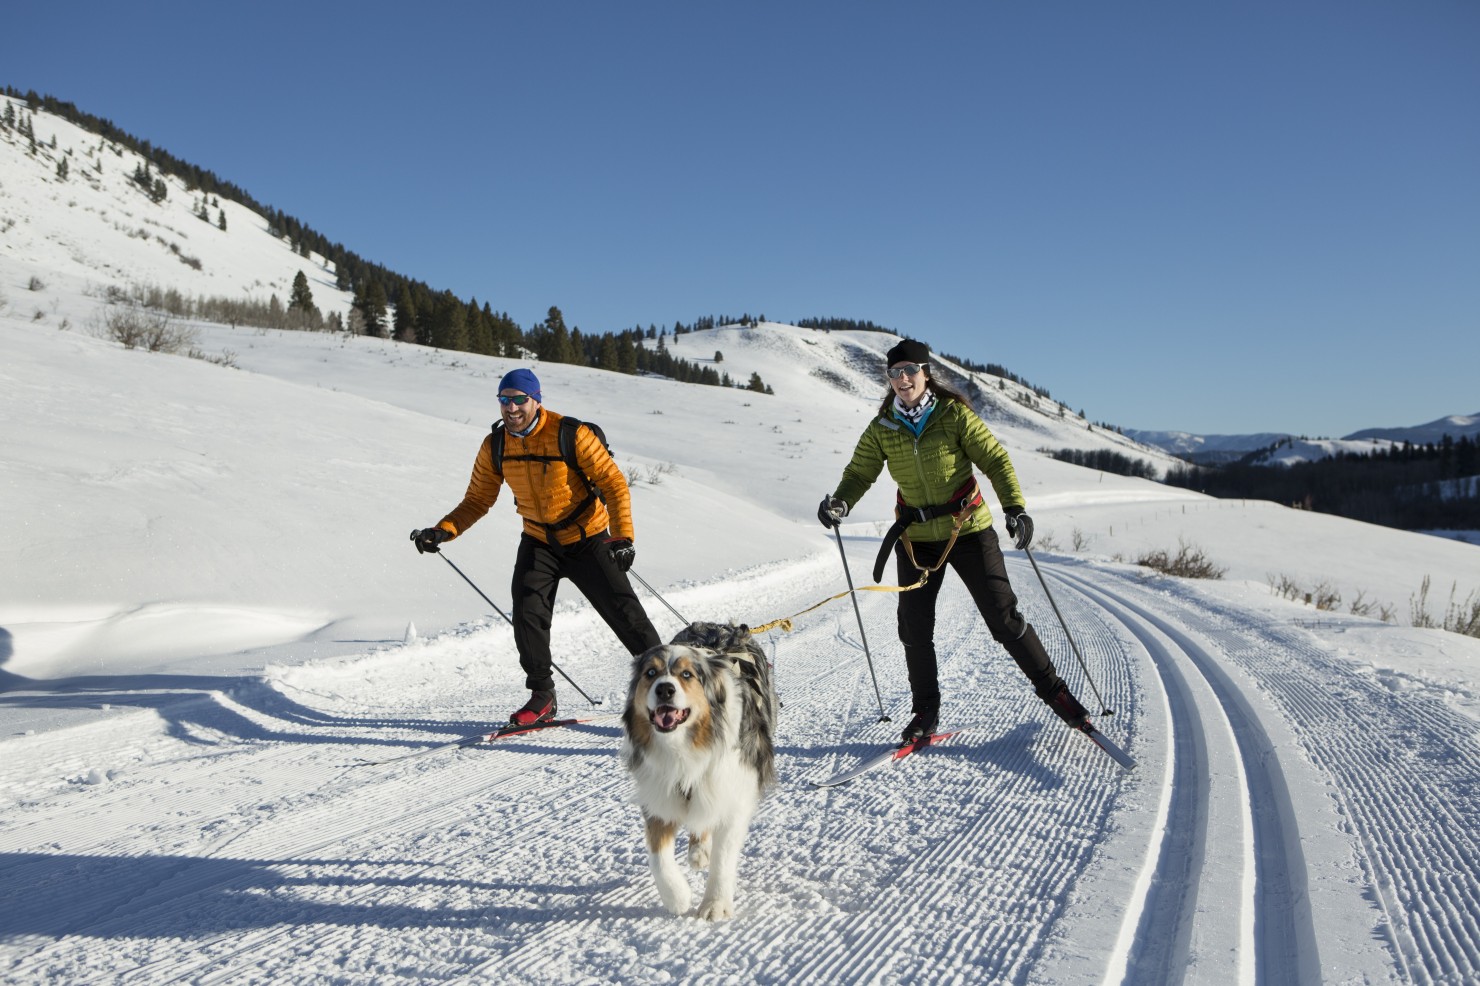 Zwei Skilangläufer, ein Mann und eine Frau, im Wald